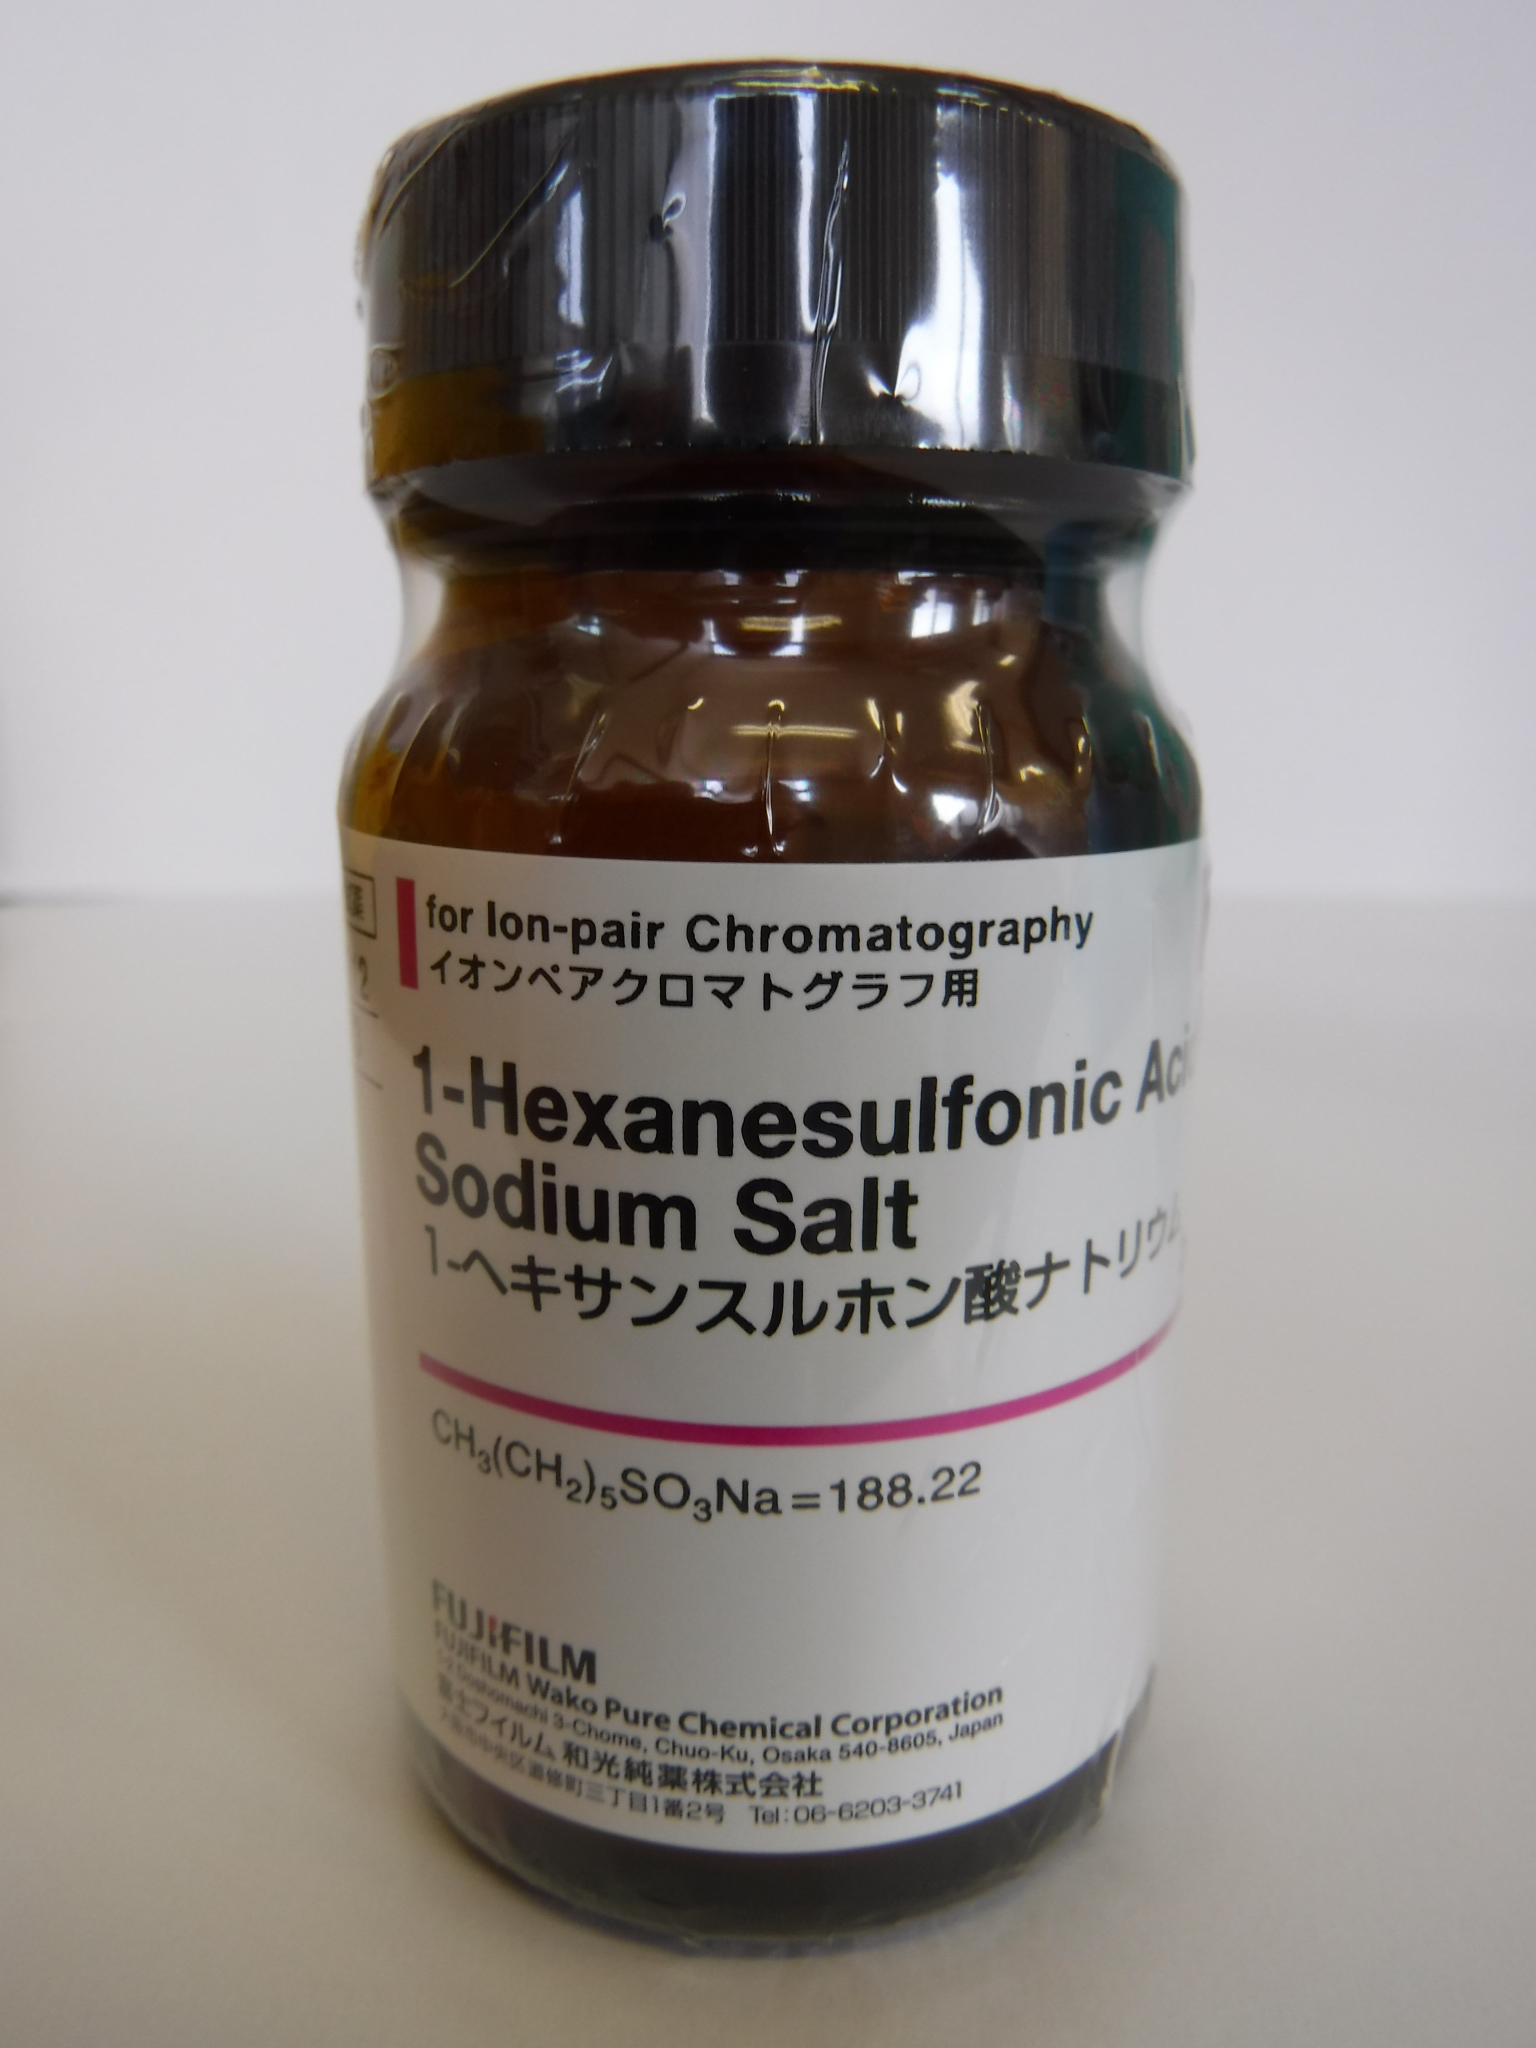 1-ヘキサンスルホン酸ナトリウム 1-Hexanesulfonic Acid Sodium Salt